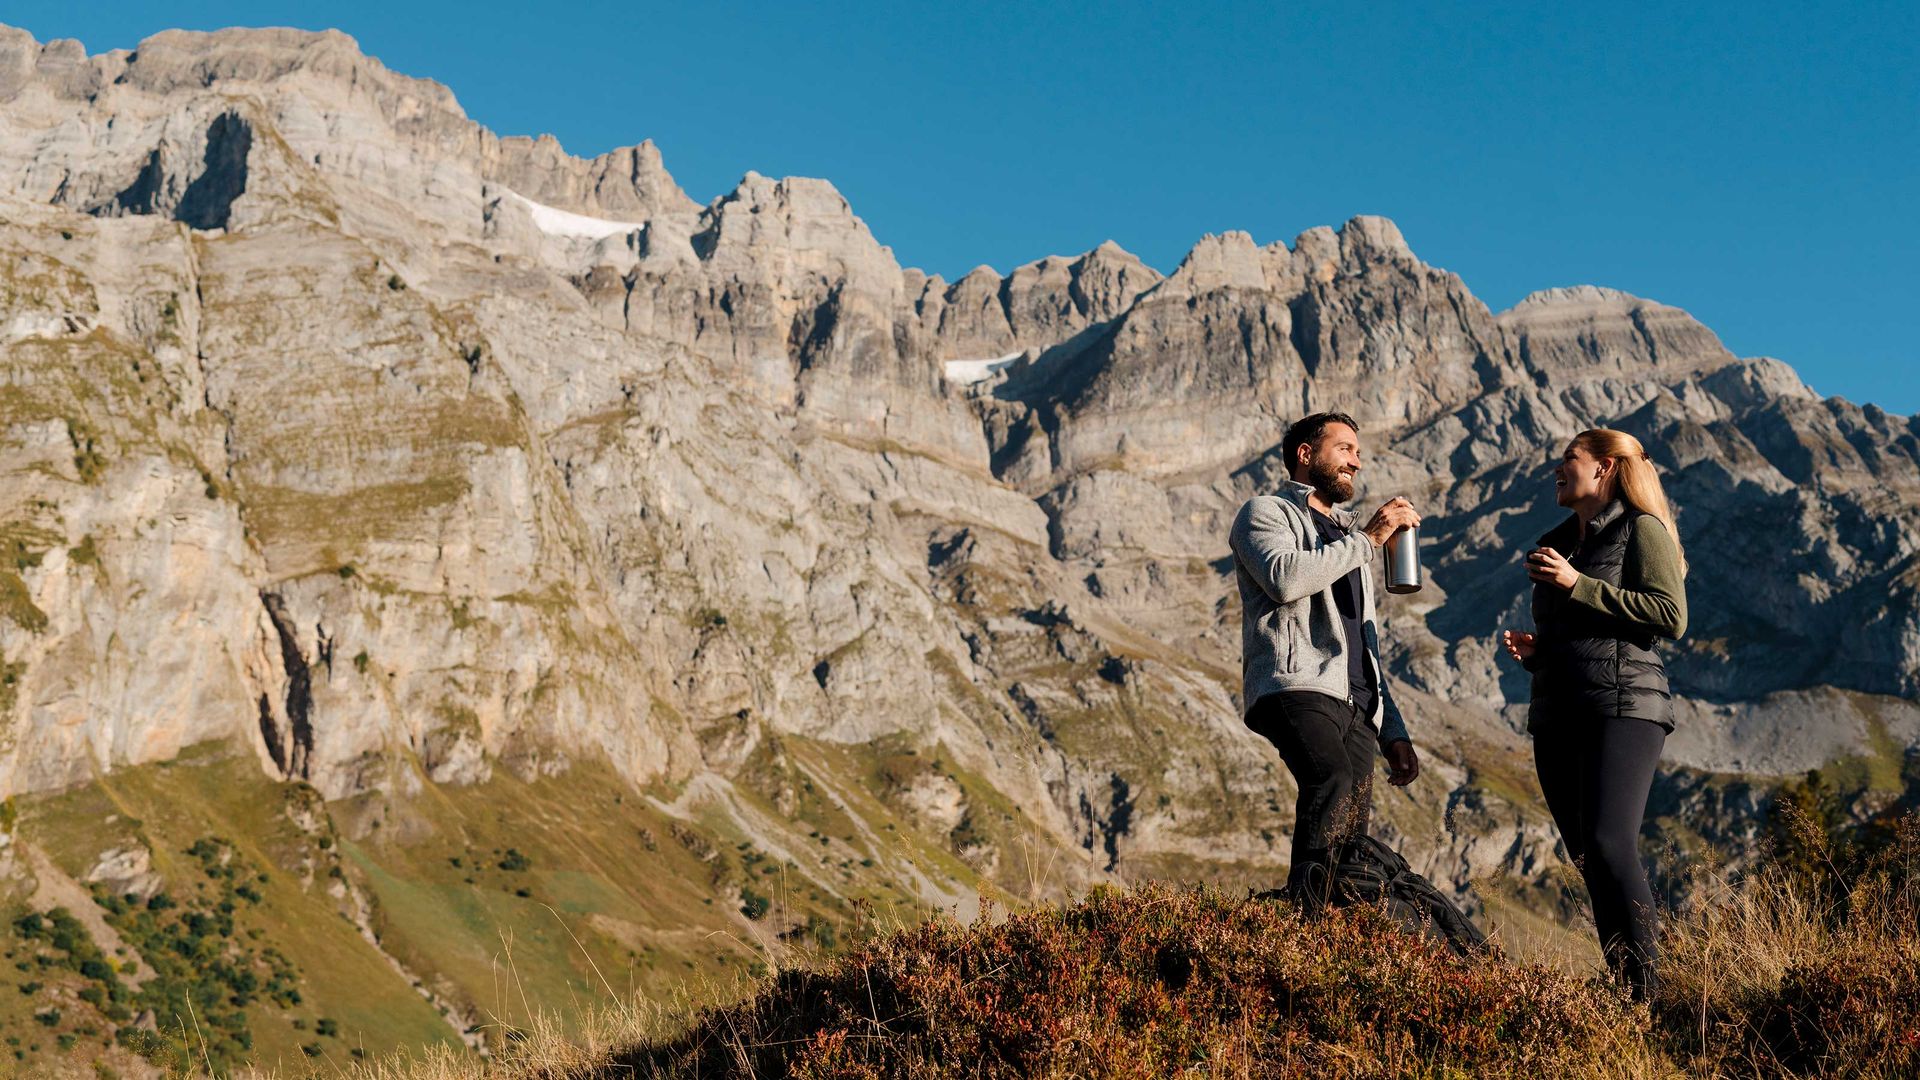 Deux randonneurs font une pause, boivent quelque chose et discutent sur un sentier de montagne avec de majestueux pics rocheux en arrière-plan.